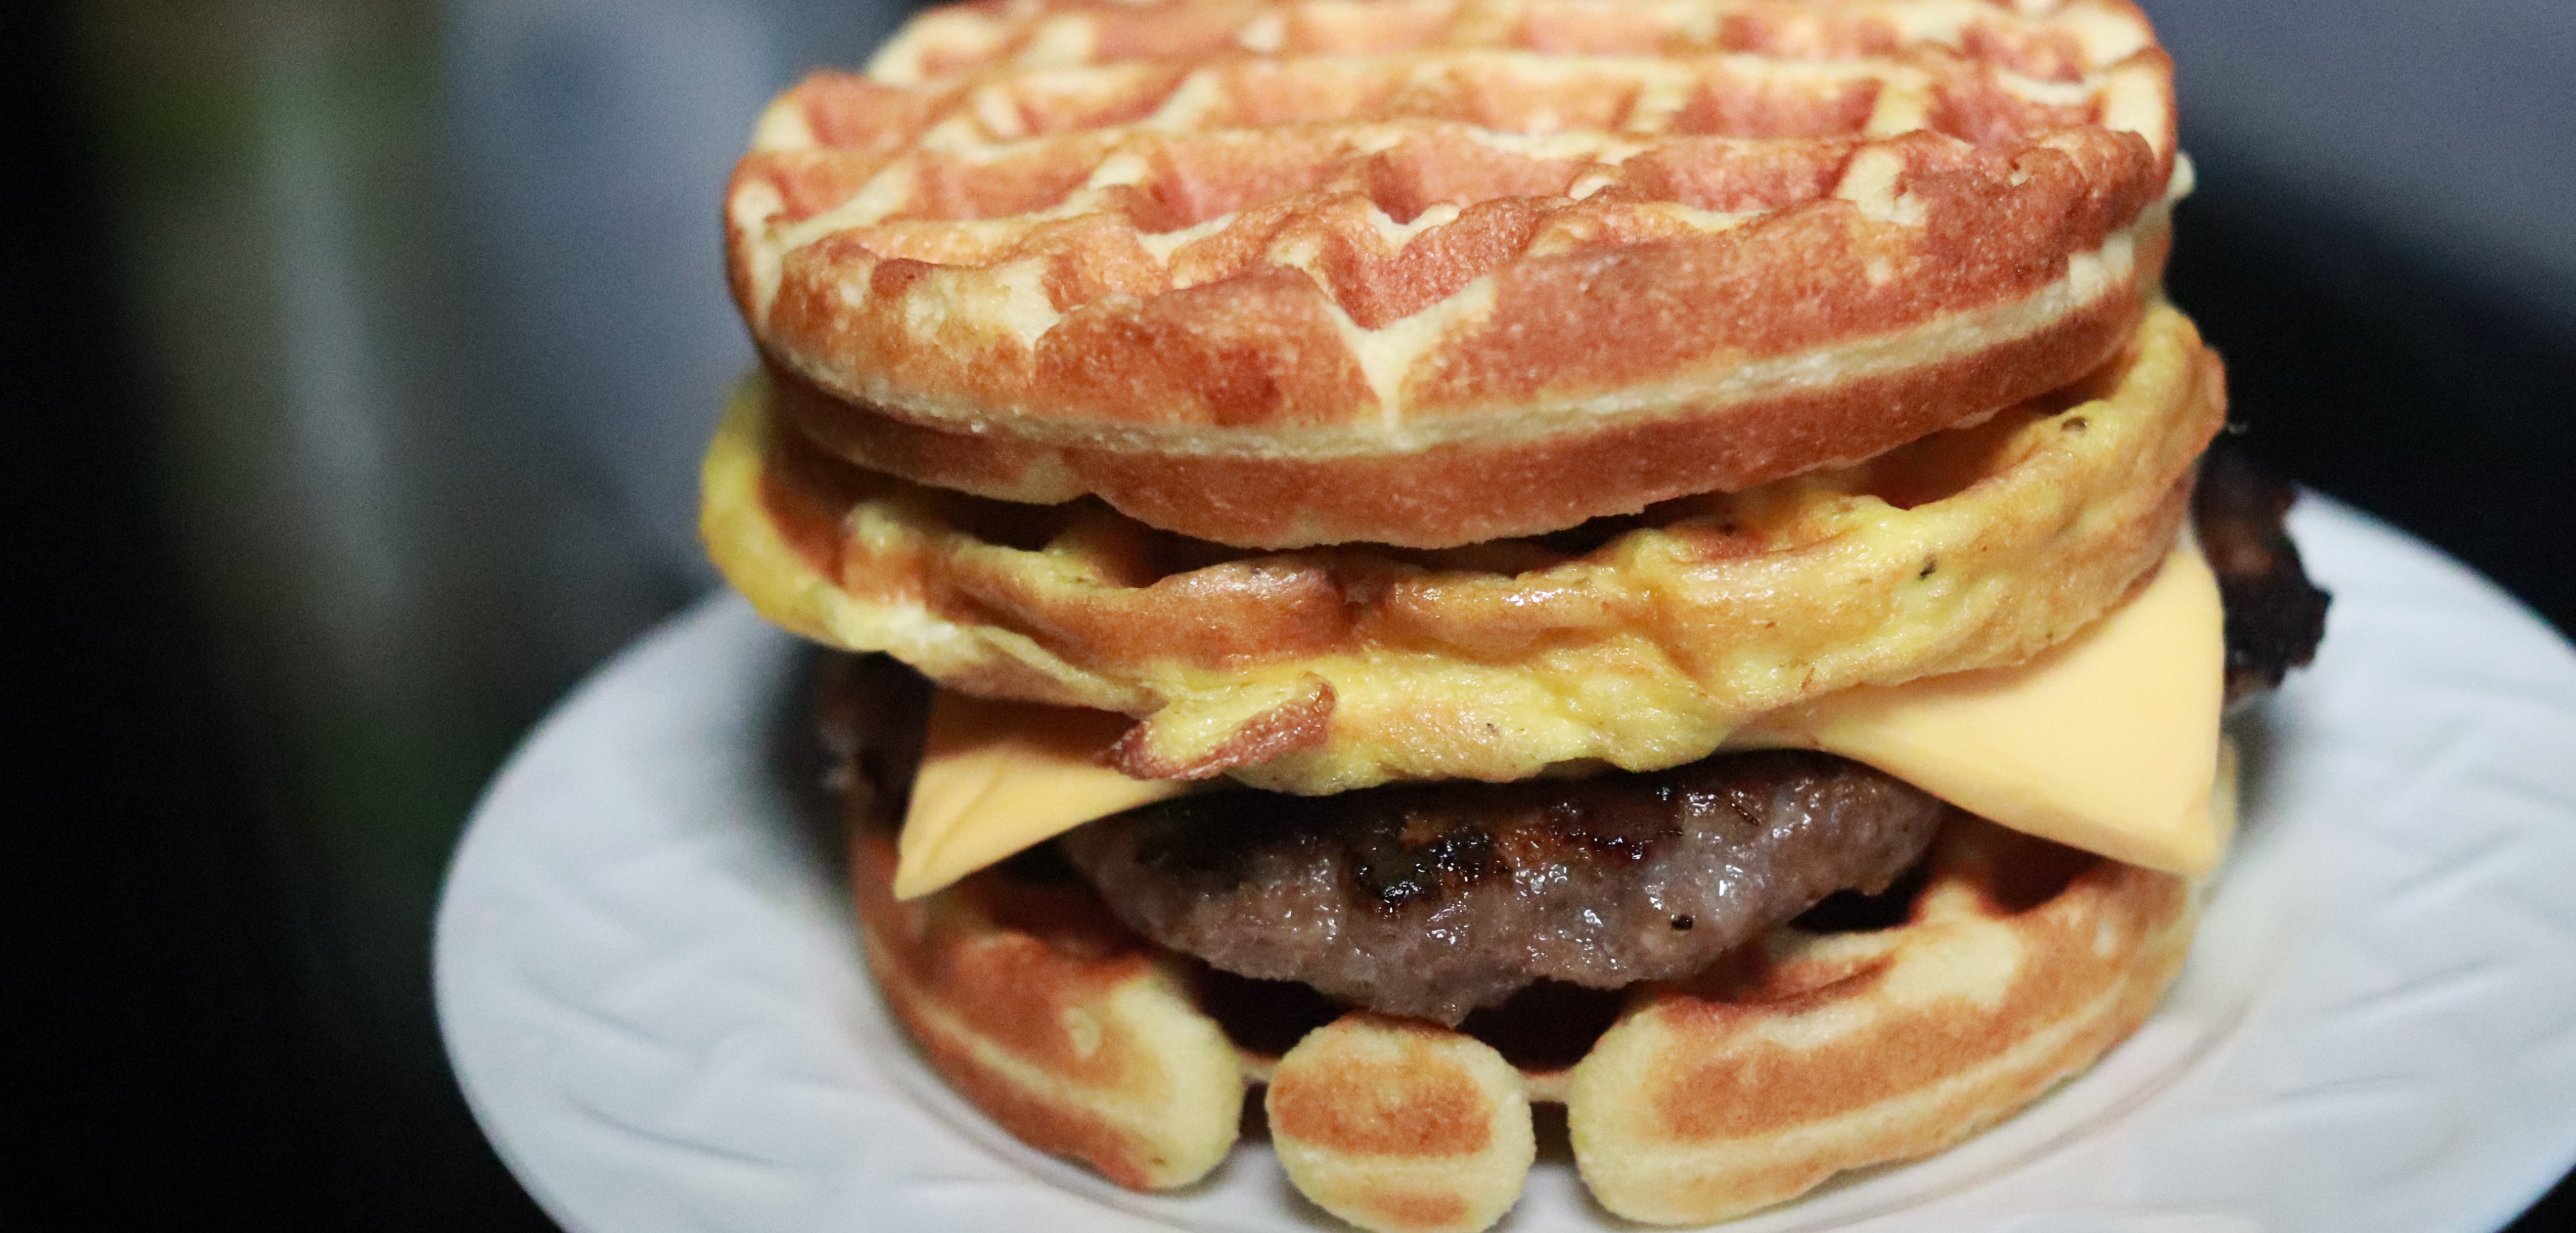 http://www.tryketowith.me/wp-content/uploads/2019/06/Keto-Waffle-Breakfast-Sandwich.jpg